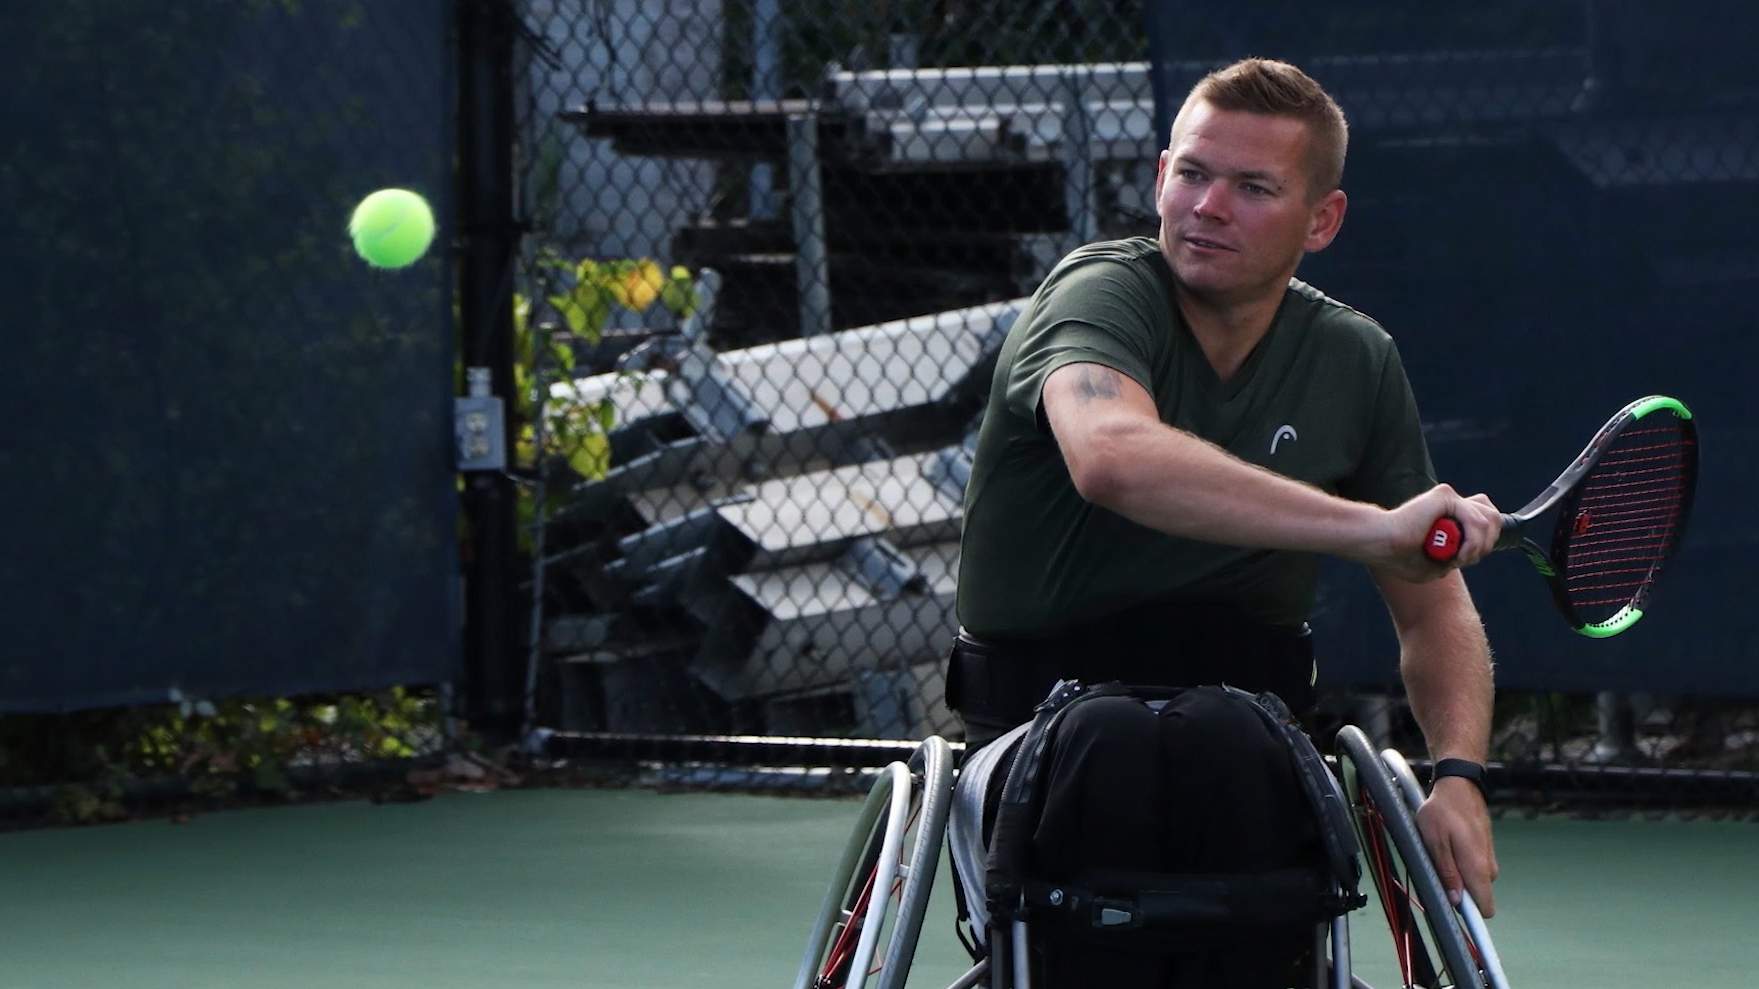 wheelchair tennis athlete